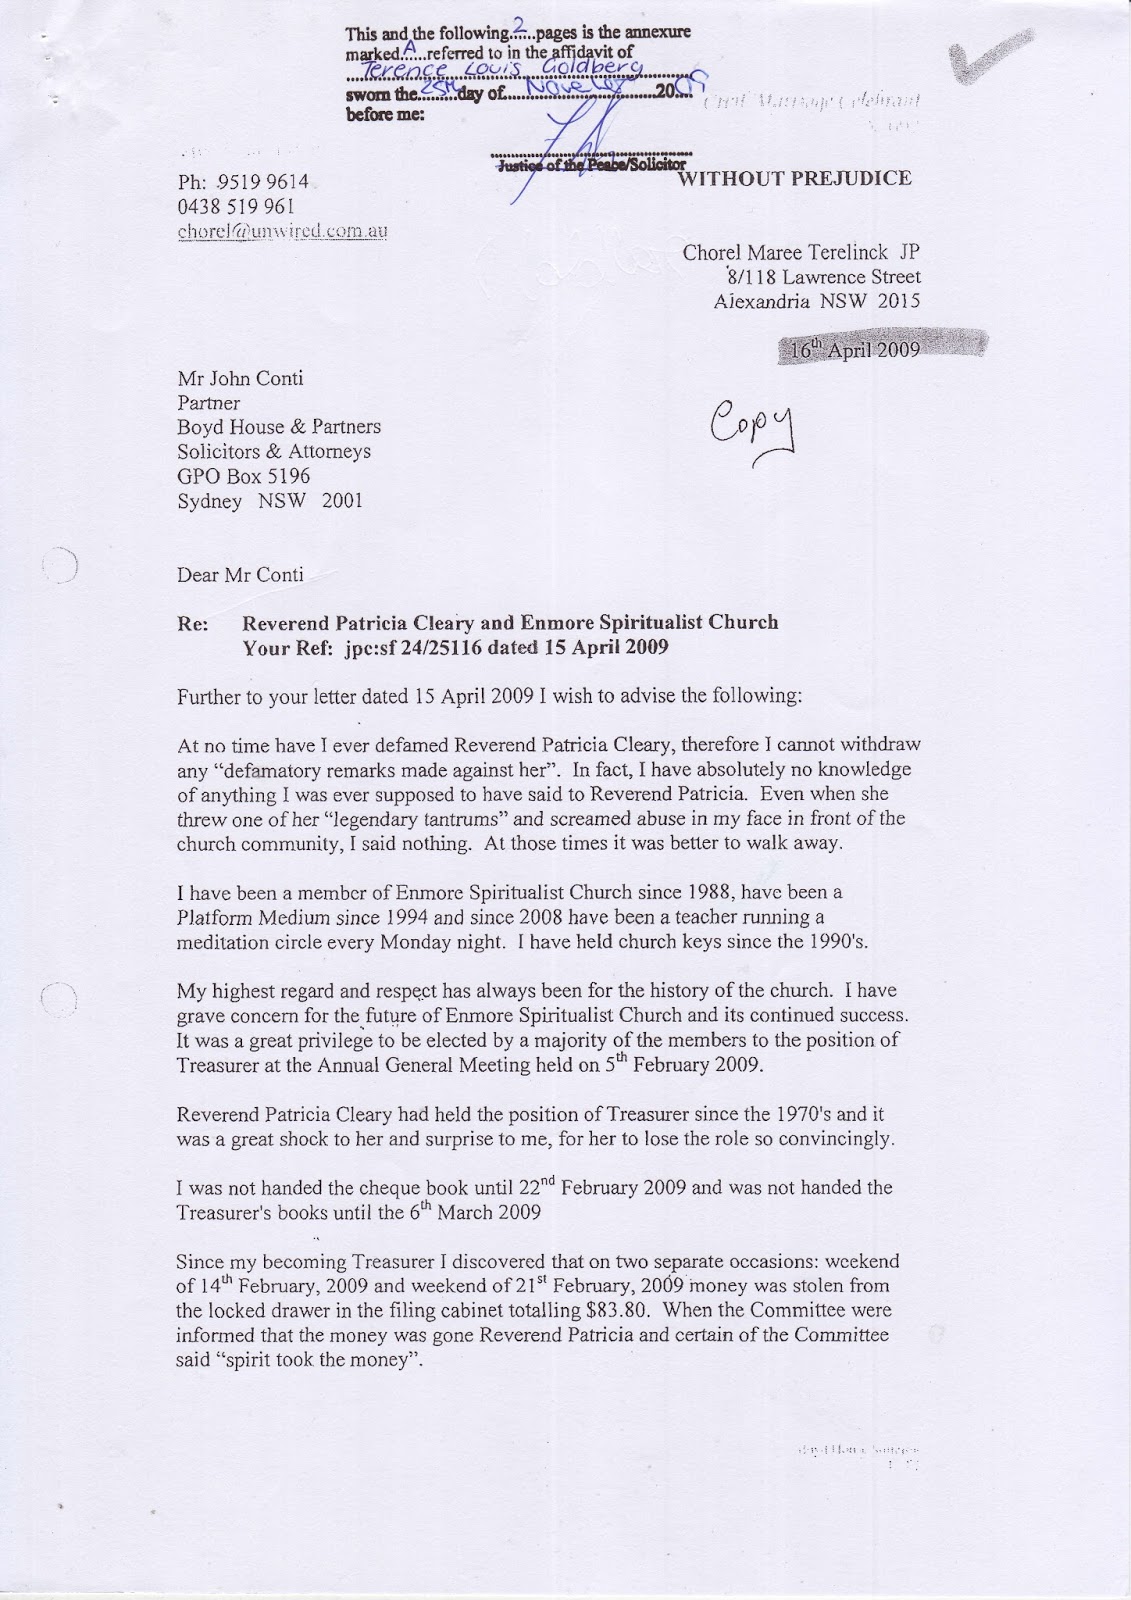 Terence Goldberg’s sworn affidavit of 25 November 2009